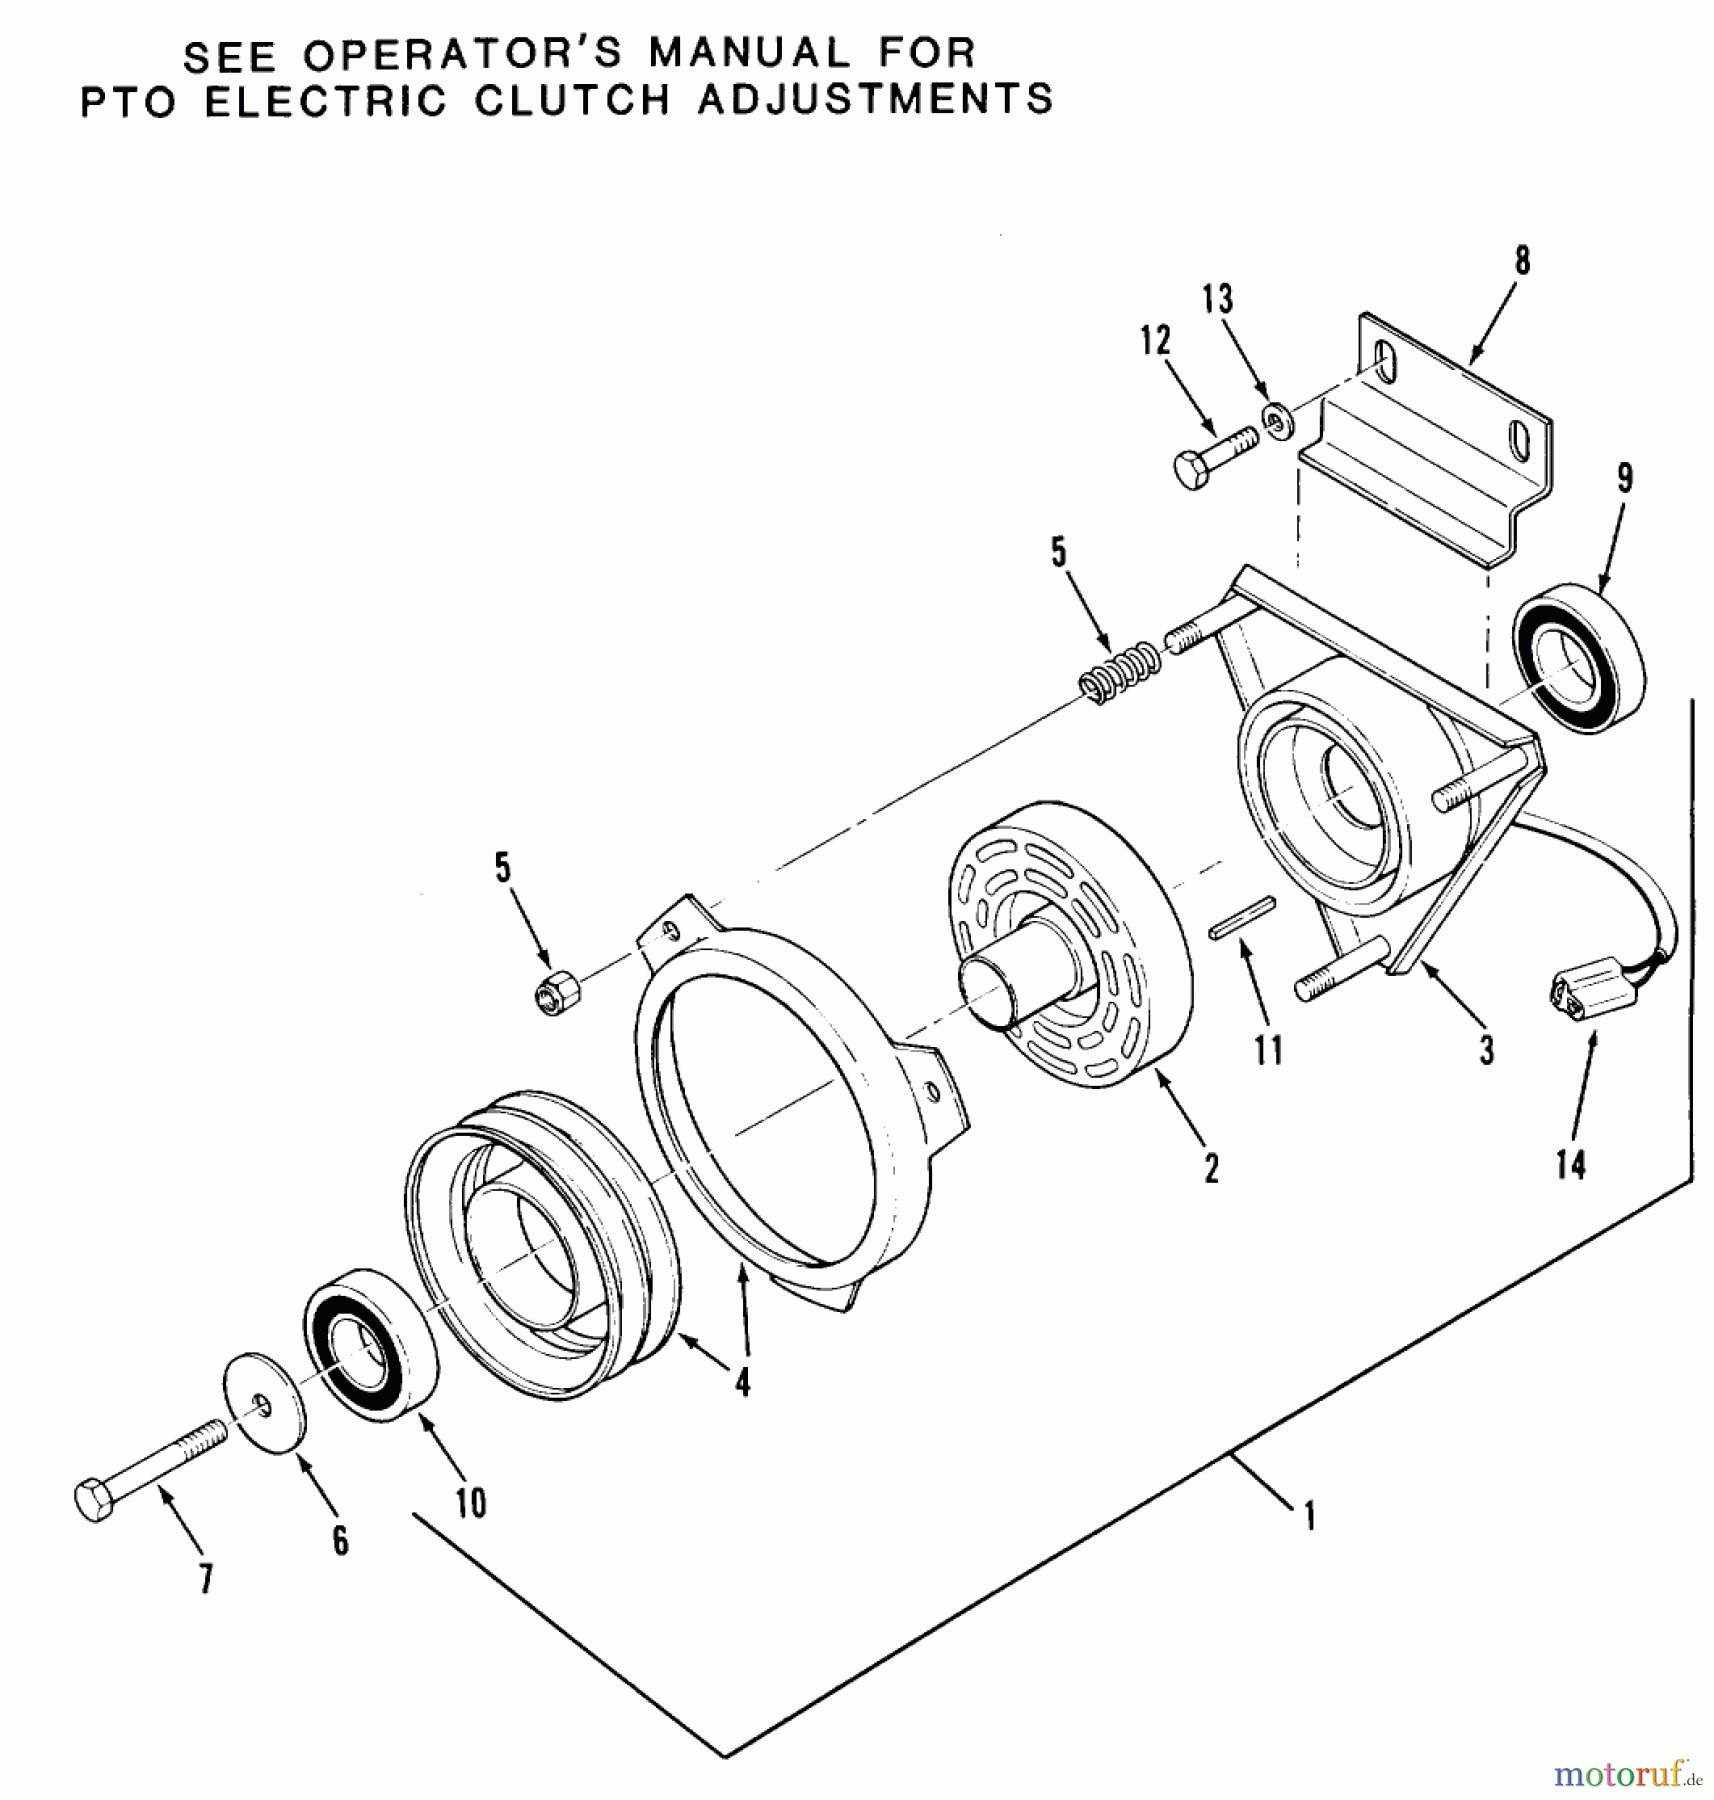  Toro Neu Mowers, Zero-Turn Z1-24OE01 (724-Z) - Toro 724-Z Tractor, 1988 SECTION 7-PTO ELECTRIC CLUTCH